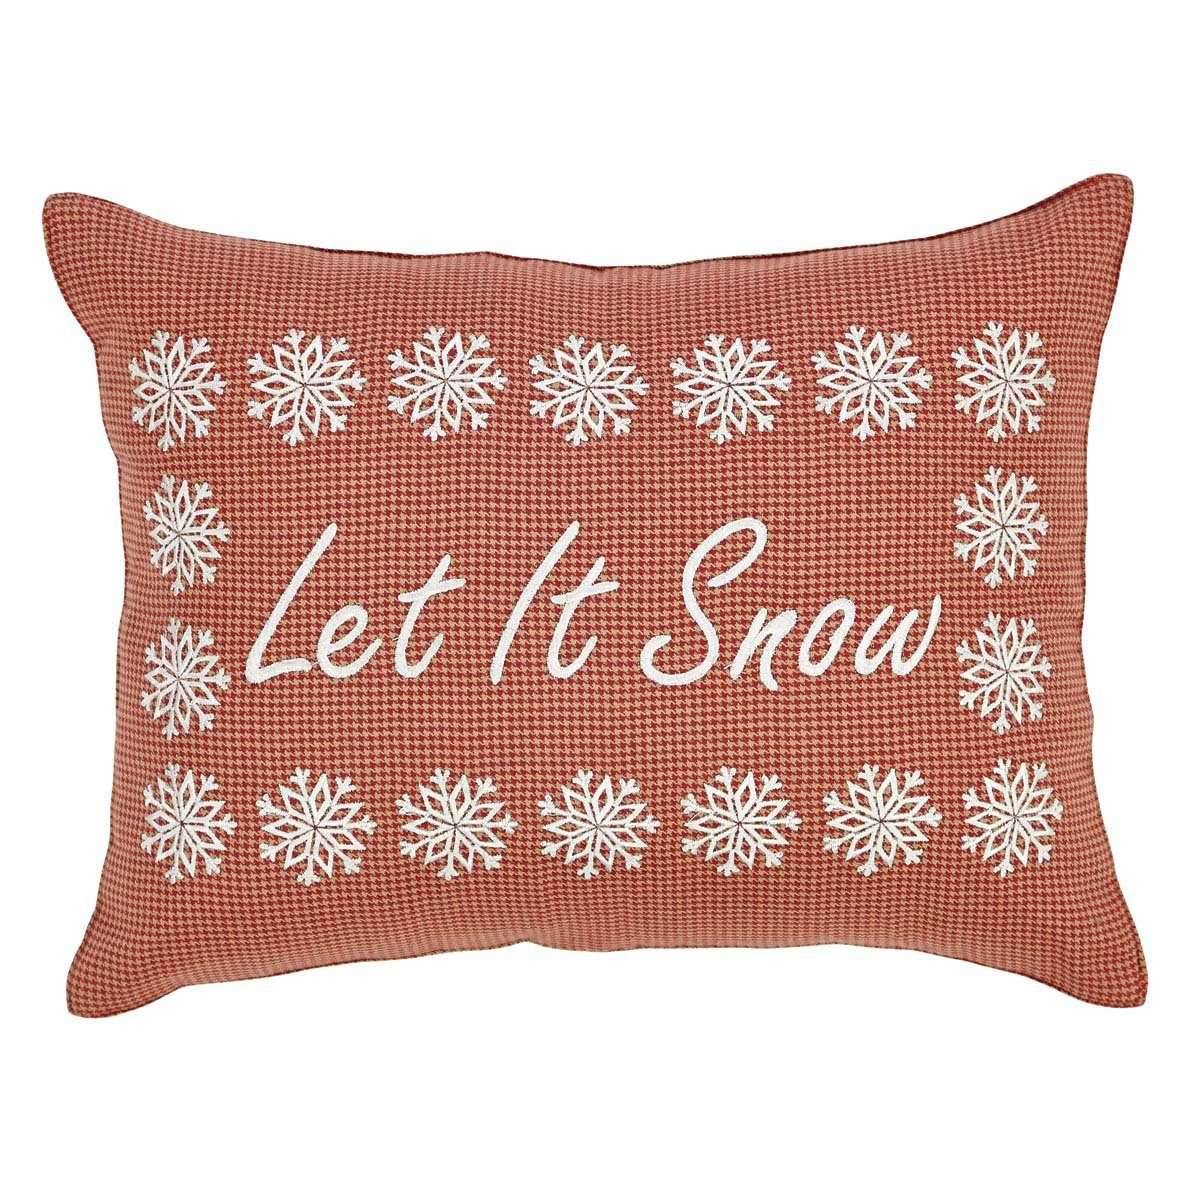 Let It Snow Pillow 14x18 - The Fox Decor